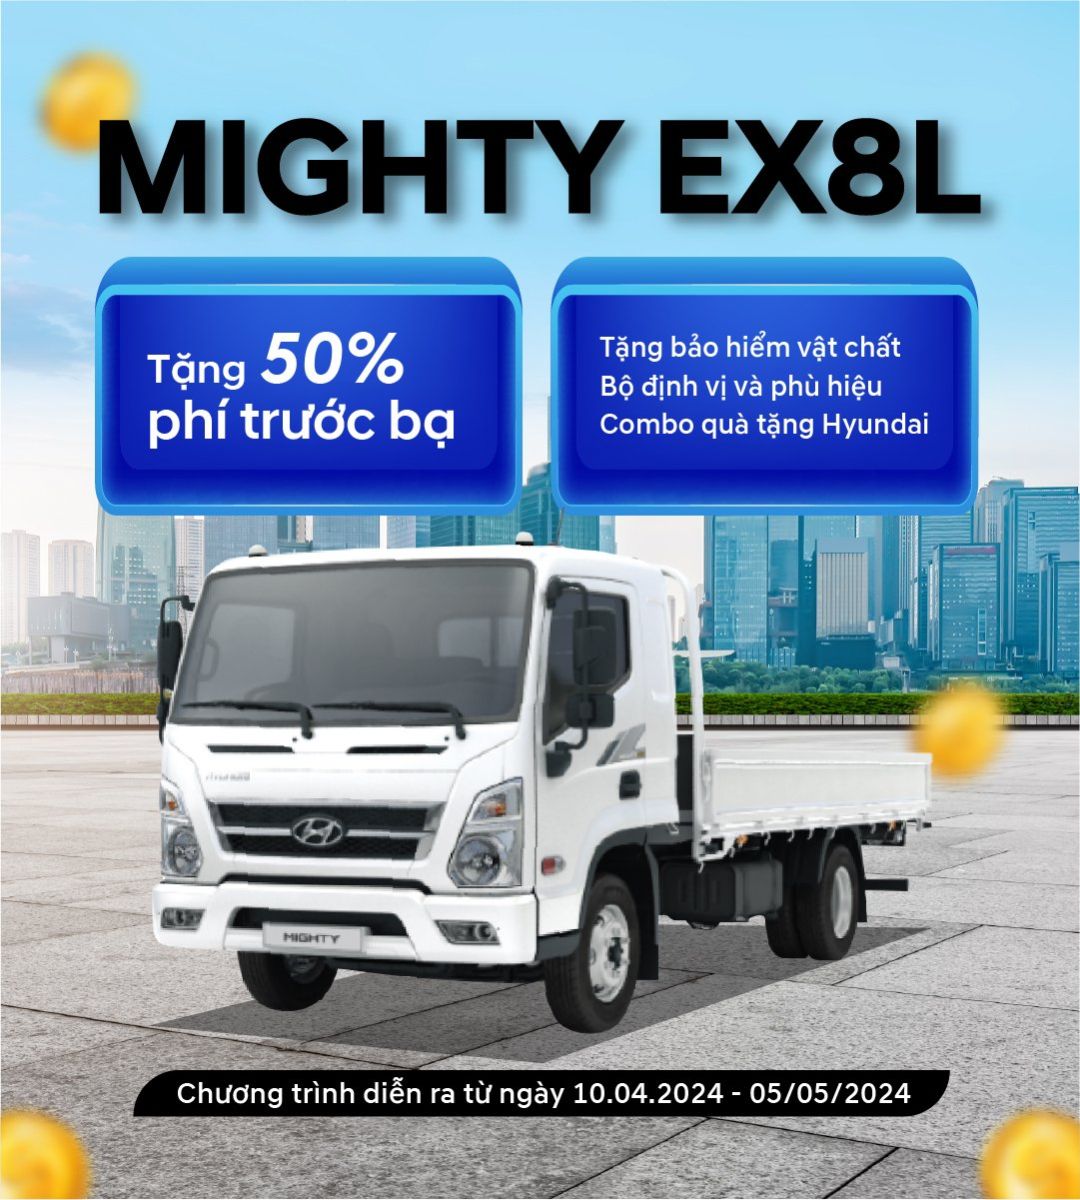 Chương trình khuyến mãi khi mua Mighty EX8L